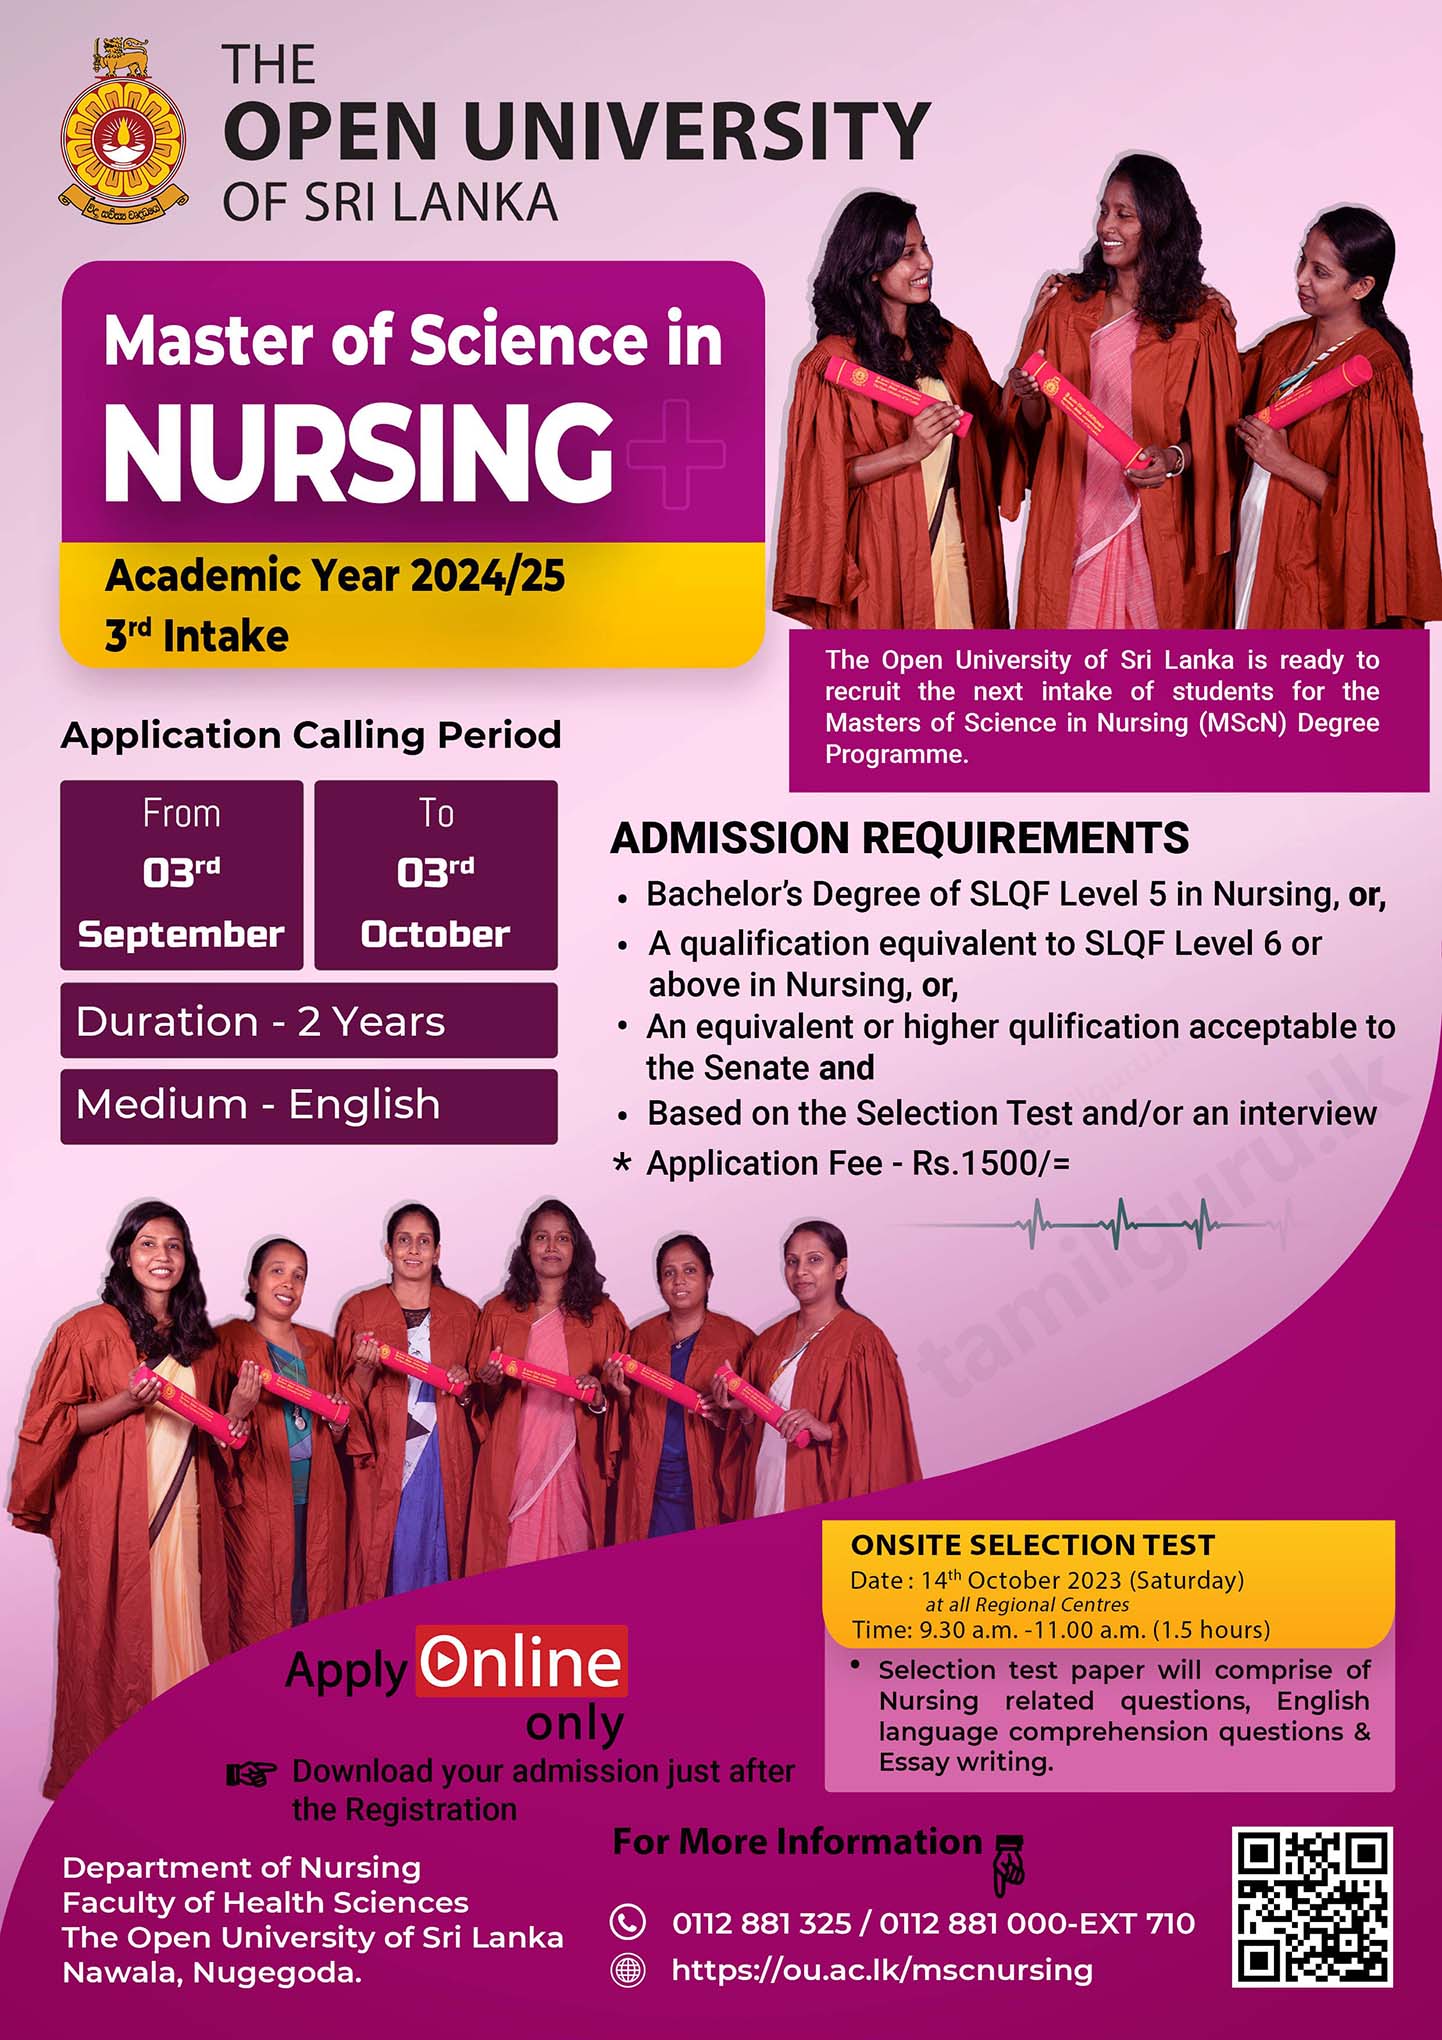 MSc in Nursing Degree Programme 2023 - Open University (OUSL)